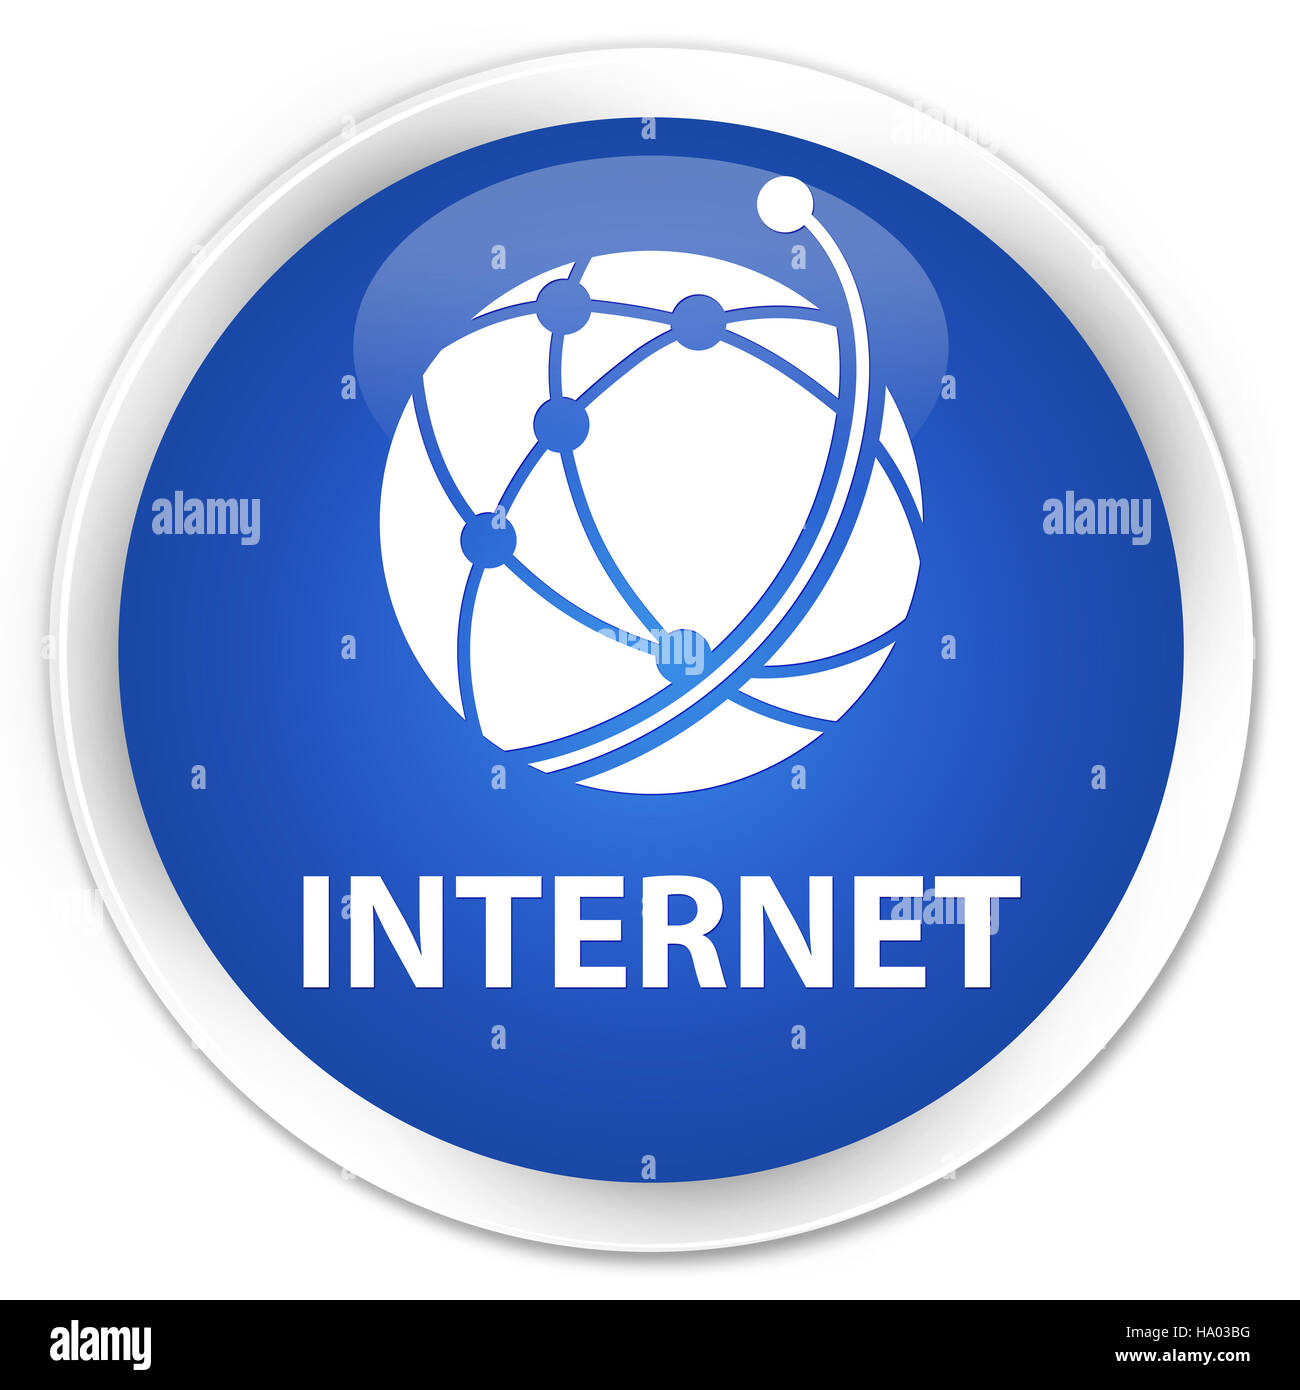 Internet (globales Netzwerk-Symbol) auf Premium-blau Runde Taste abstrakte Abbildung isoliert Stockfoto